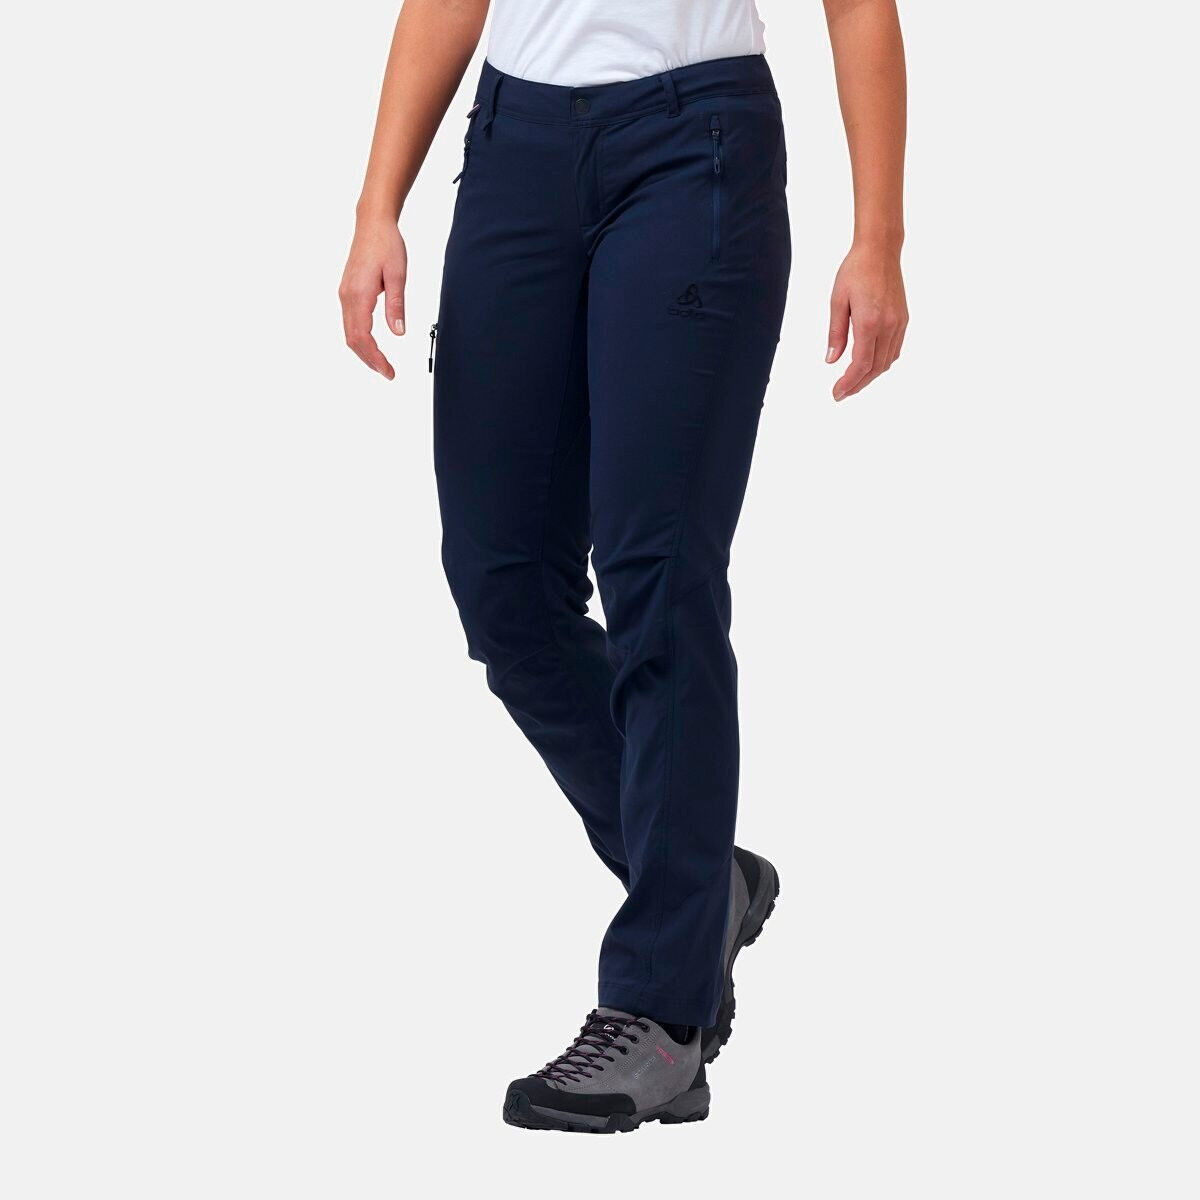 Odlo Wedgemount - Walking trousers - Women's